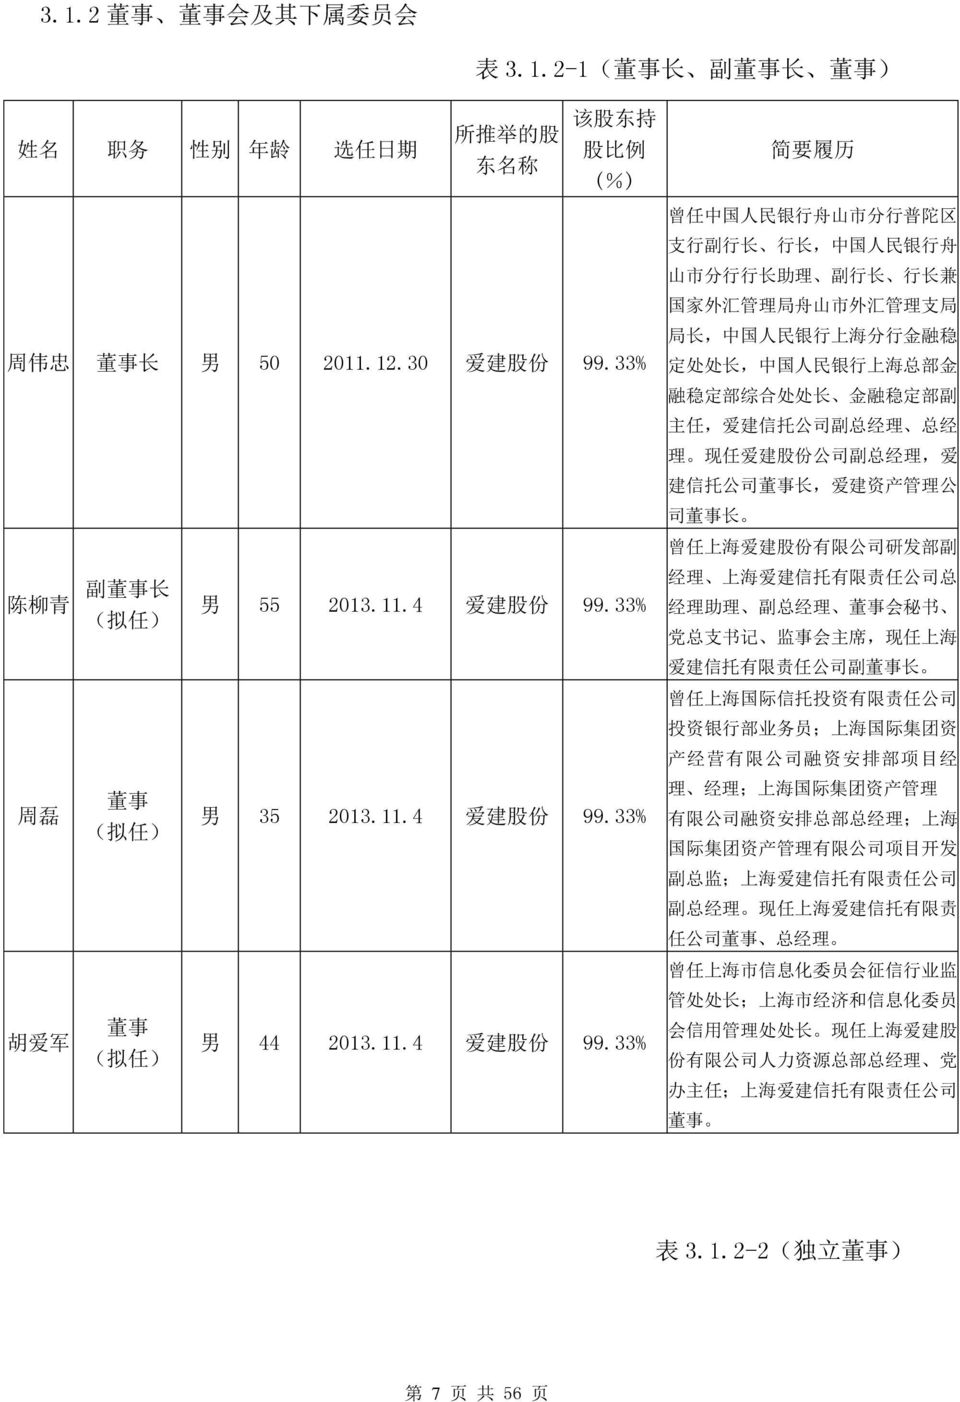 33% 董 事 ( 拟 任 ) 男 35 2013.11.4 爱 建 股 份 99.